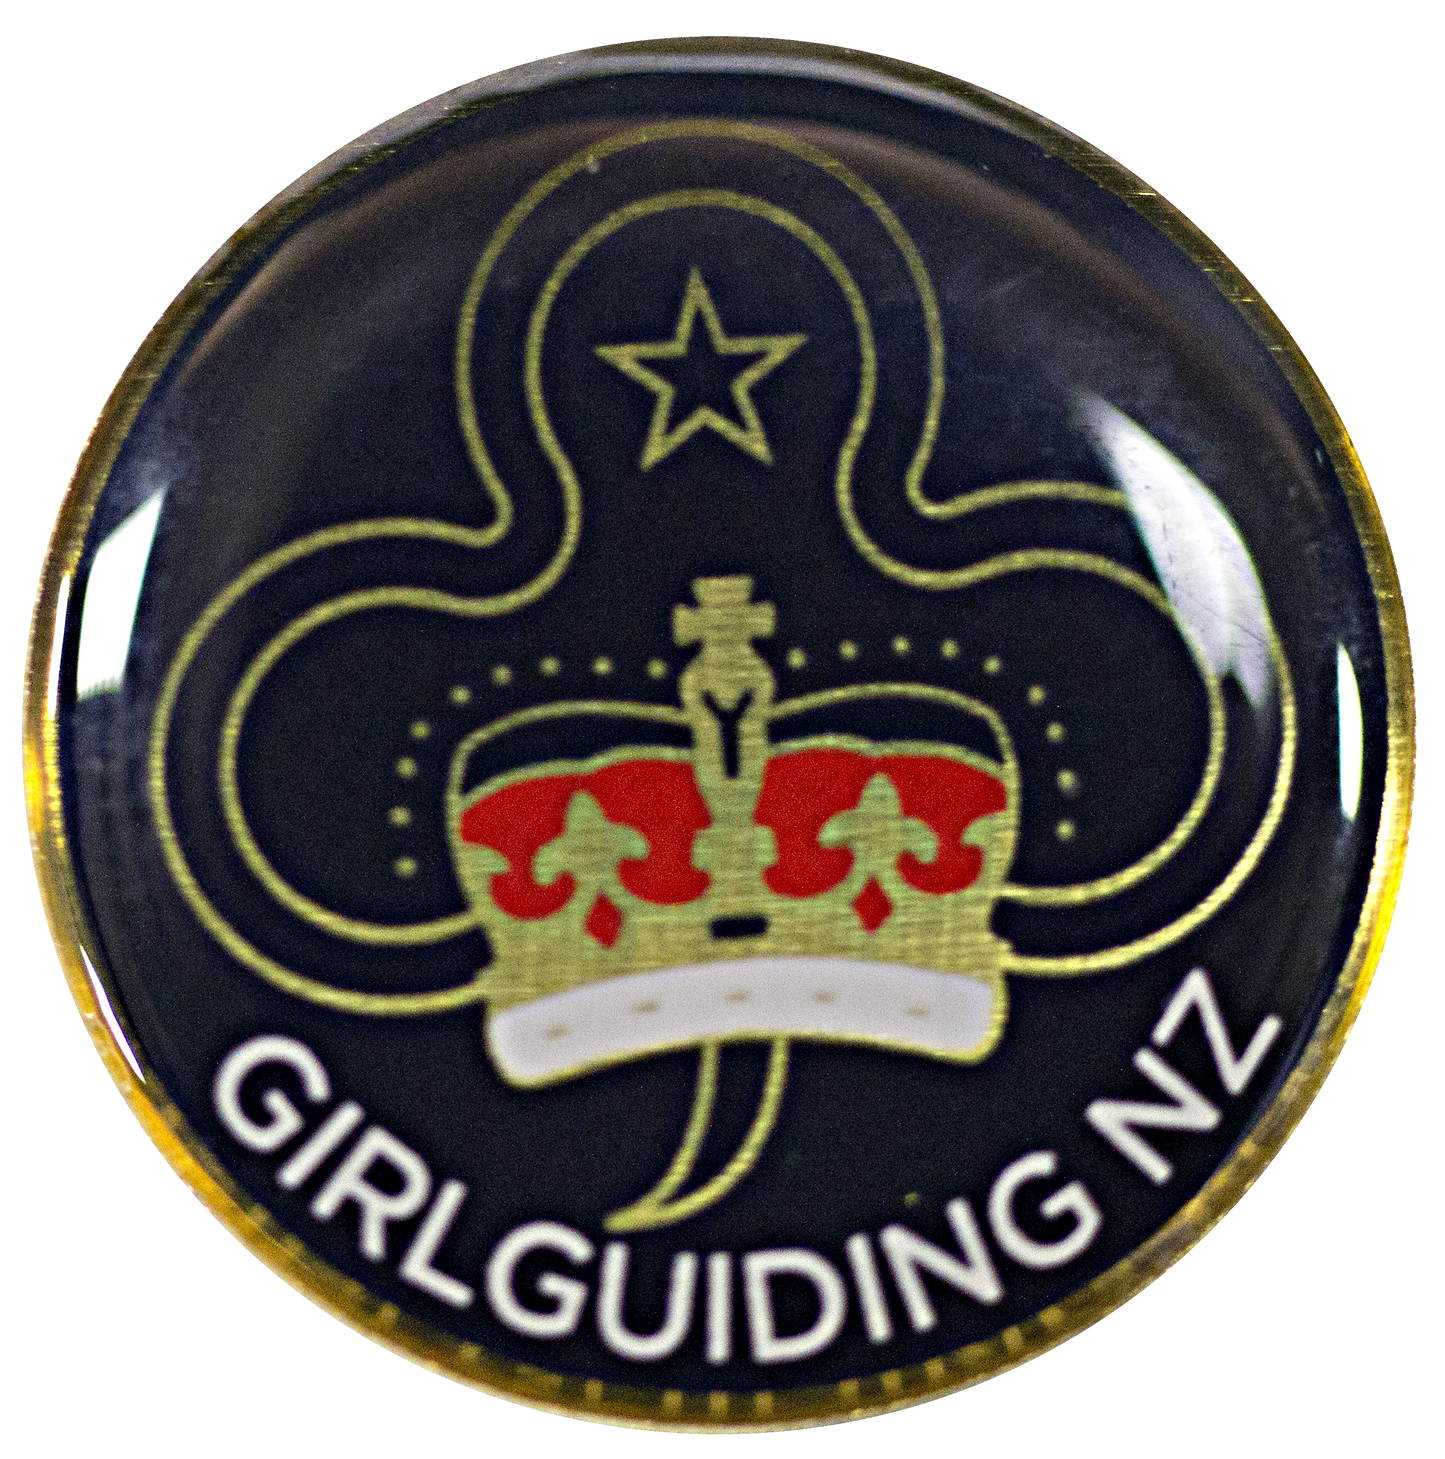 Queen's Guide badges